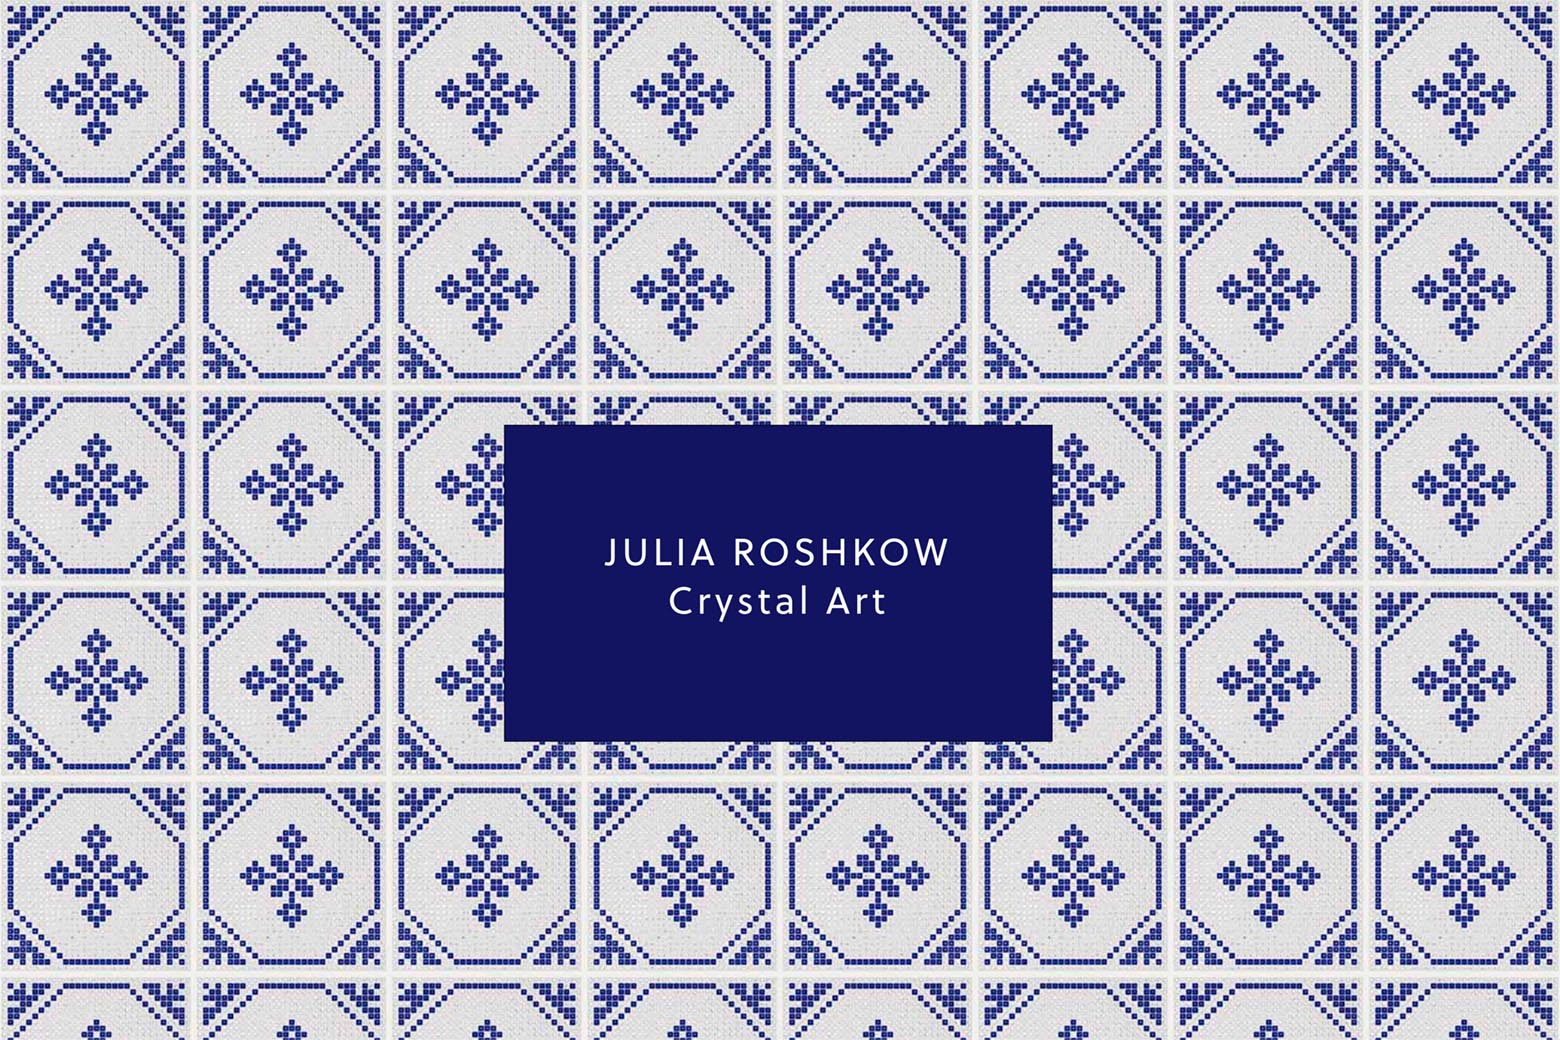 Bespoke website design for an artist - Julia Roshkow, creator of crystal art, New York.